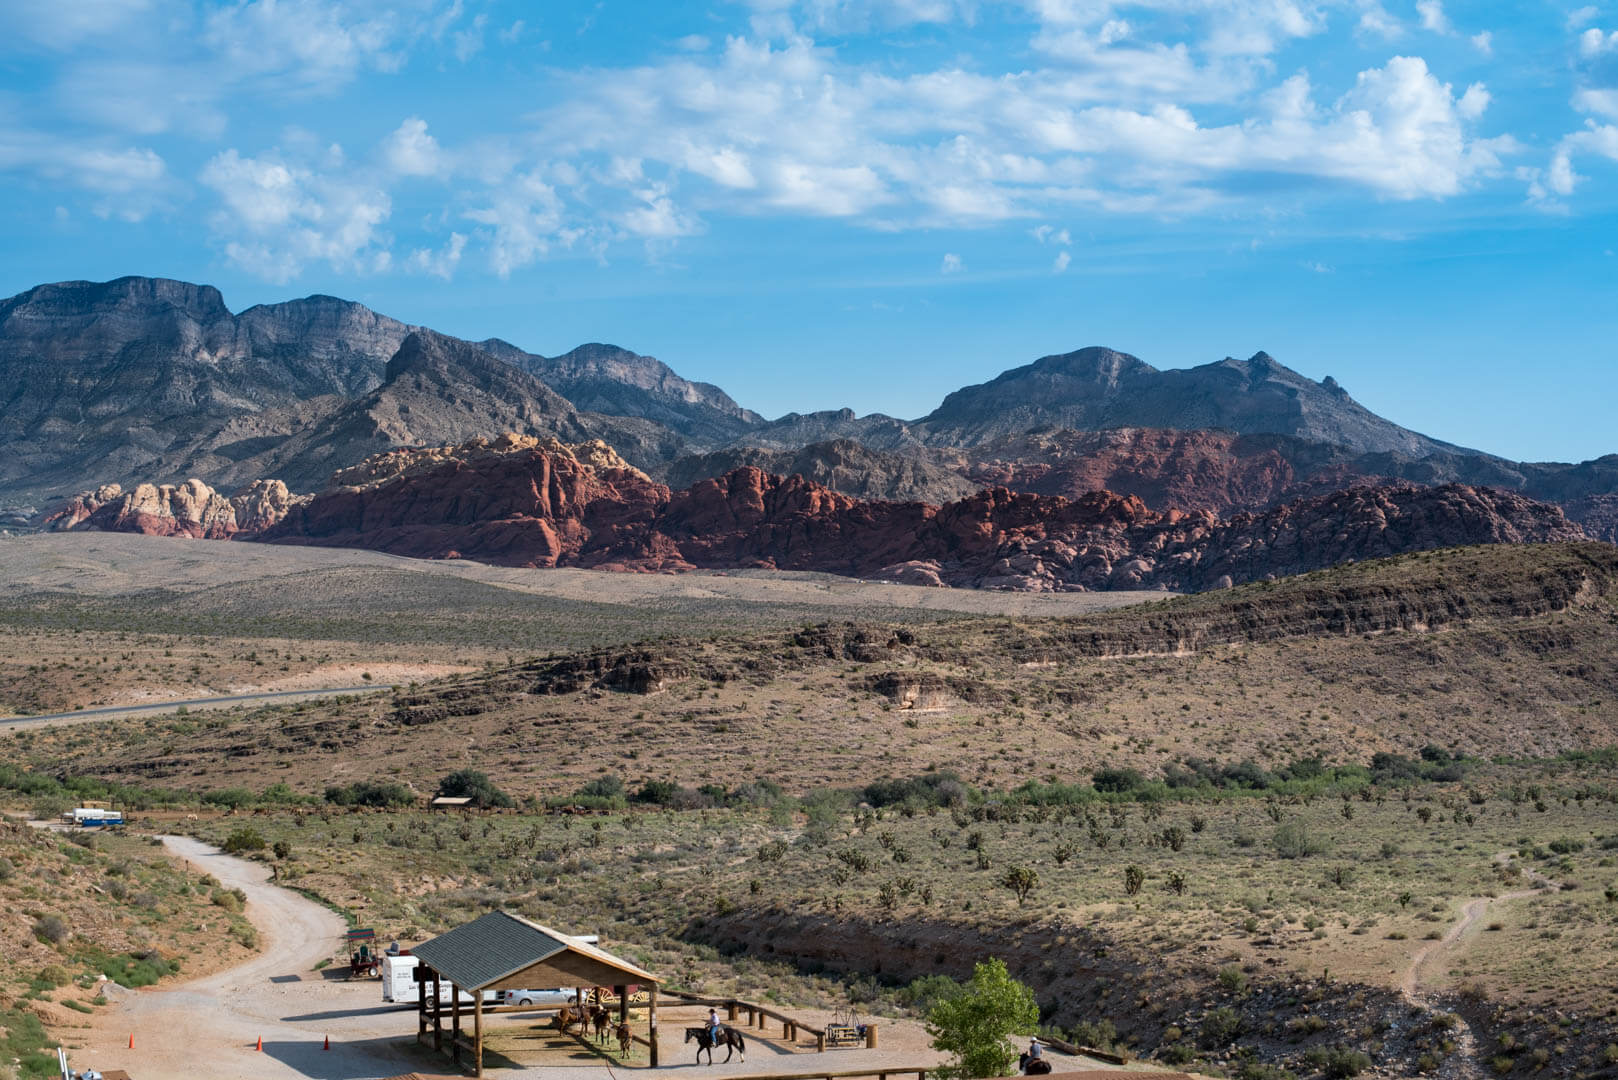 paysage d'un ranch dans le désert pris au 50mm 1.8